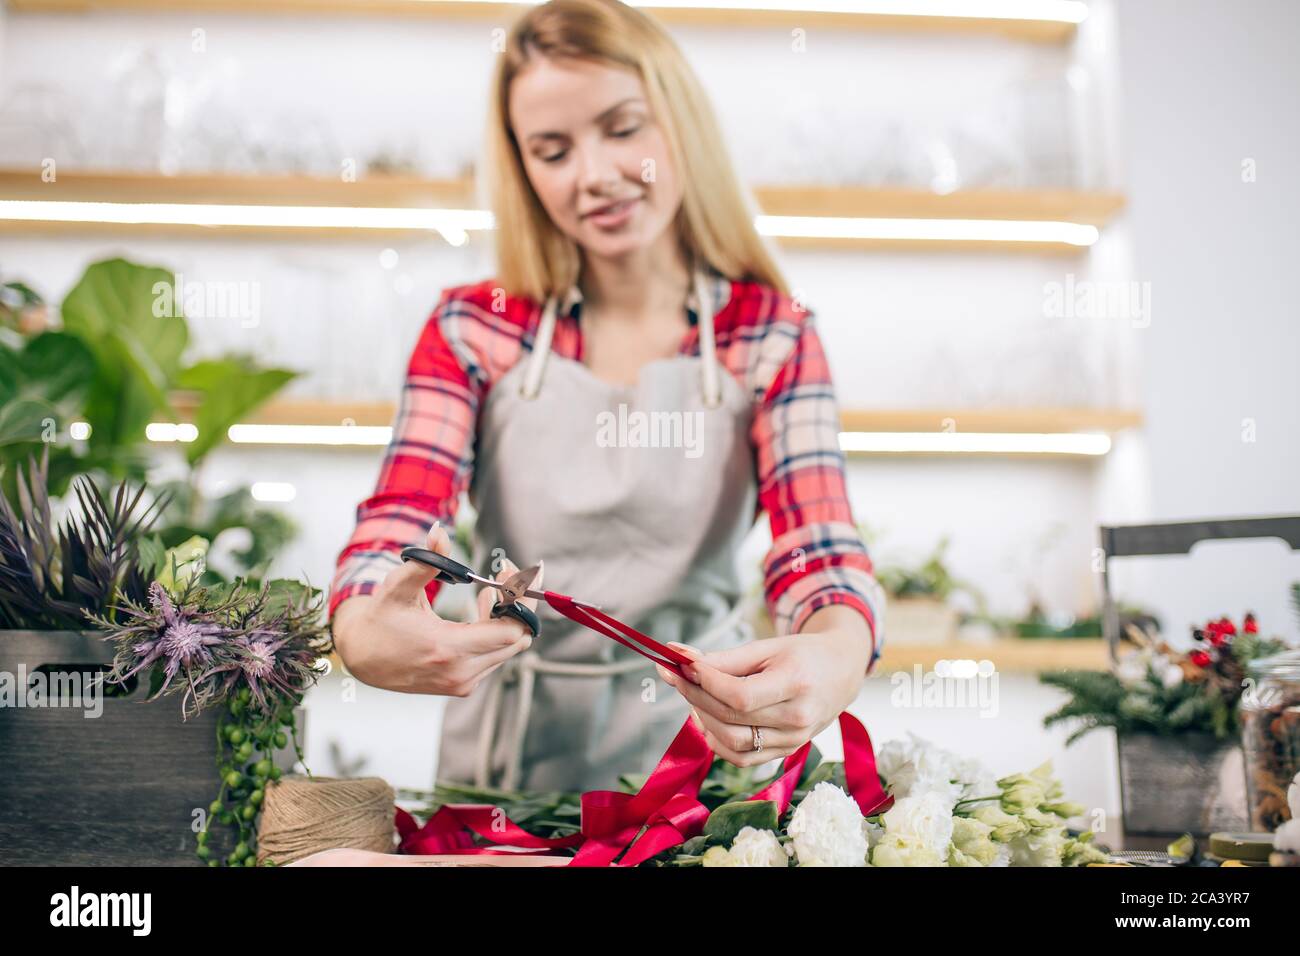 jeune femme caucasienne aux cheveux blonds aiment travailler comme fleuriste, propriétaire attrayant de magasin, jeune jardinier autour des plantes prennent soin des fleurs Banque D'Images